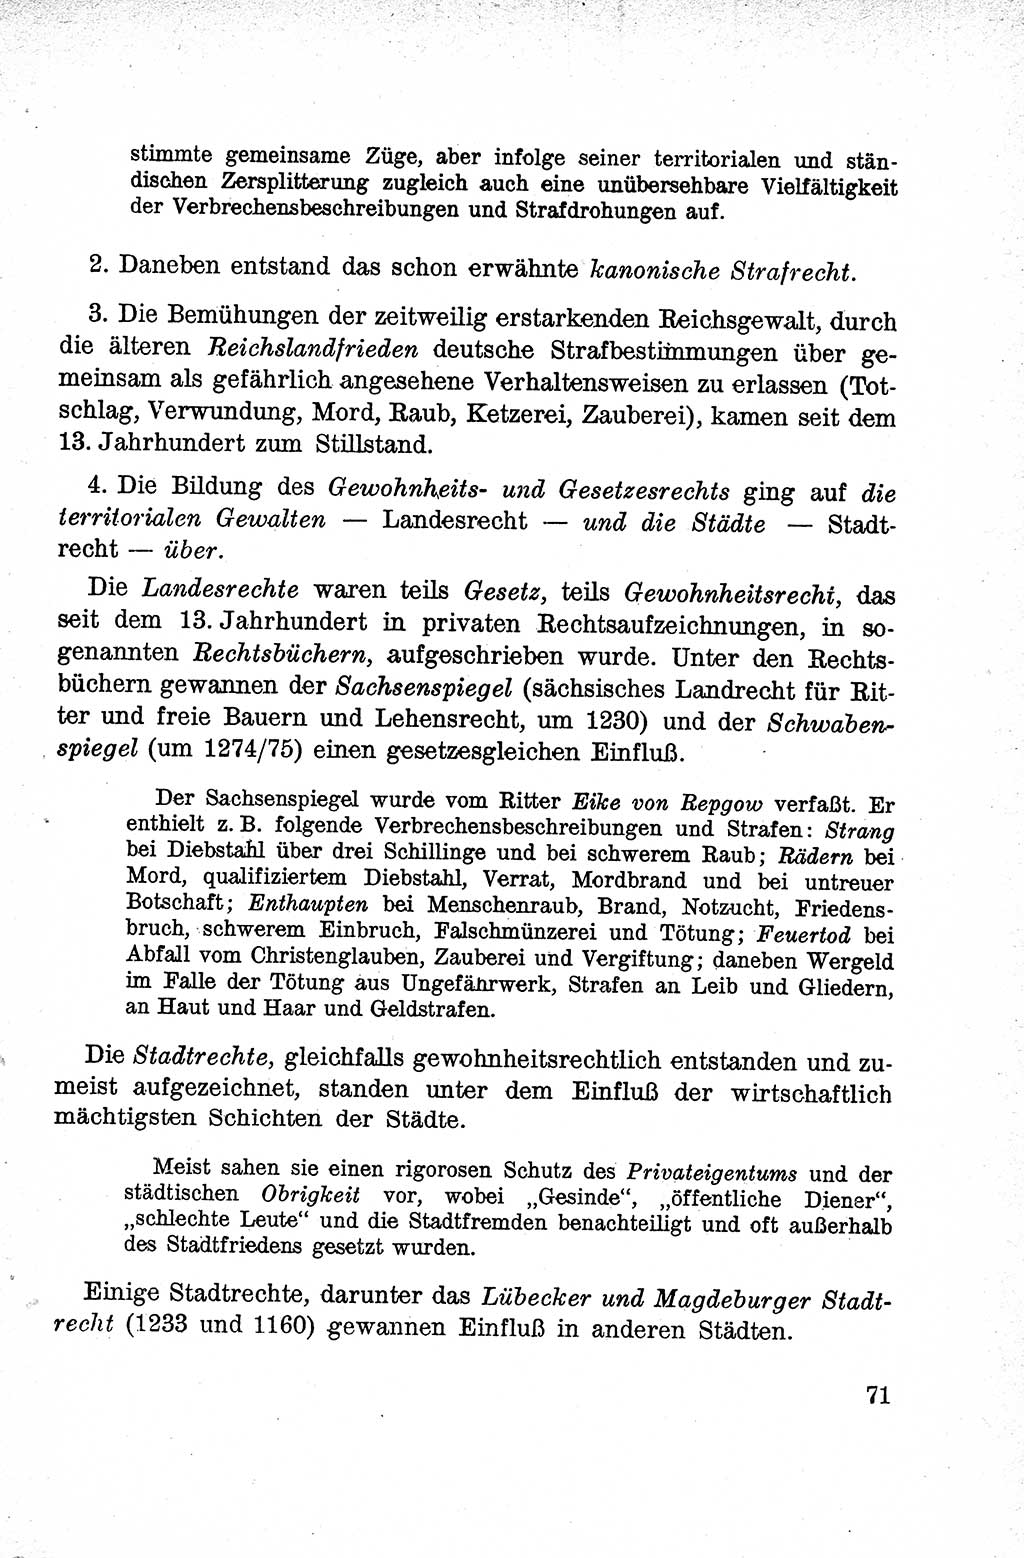 Lehrbuch des Strafrechts der Deutschen Demokratischen Republik (DDR), Allgemeiner Teil 1959, Seite 71 (Lb. Strafr. DDR AT 1959, S. 71)